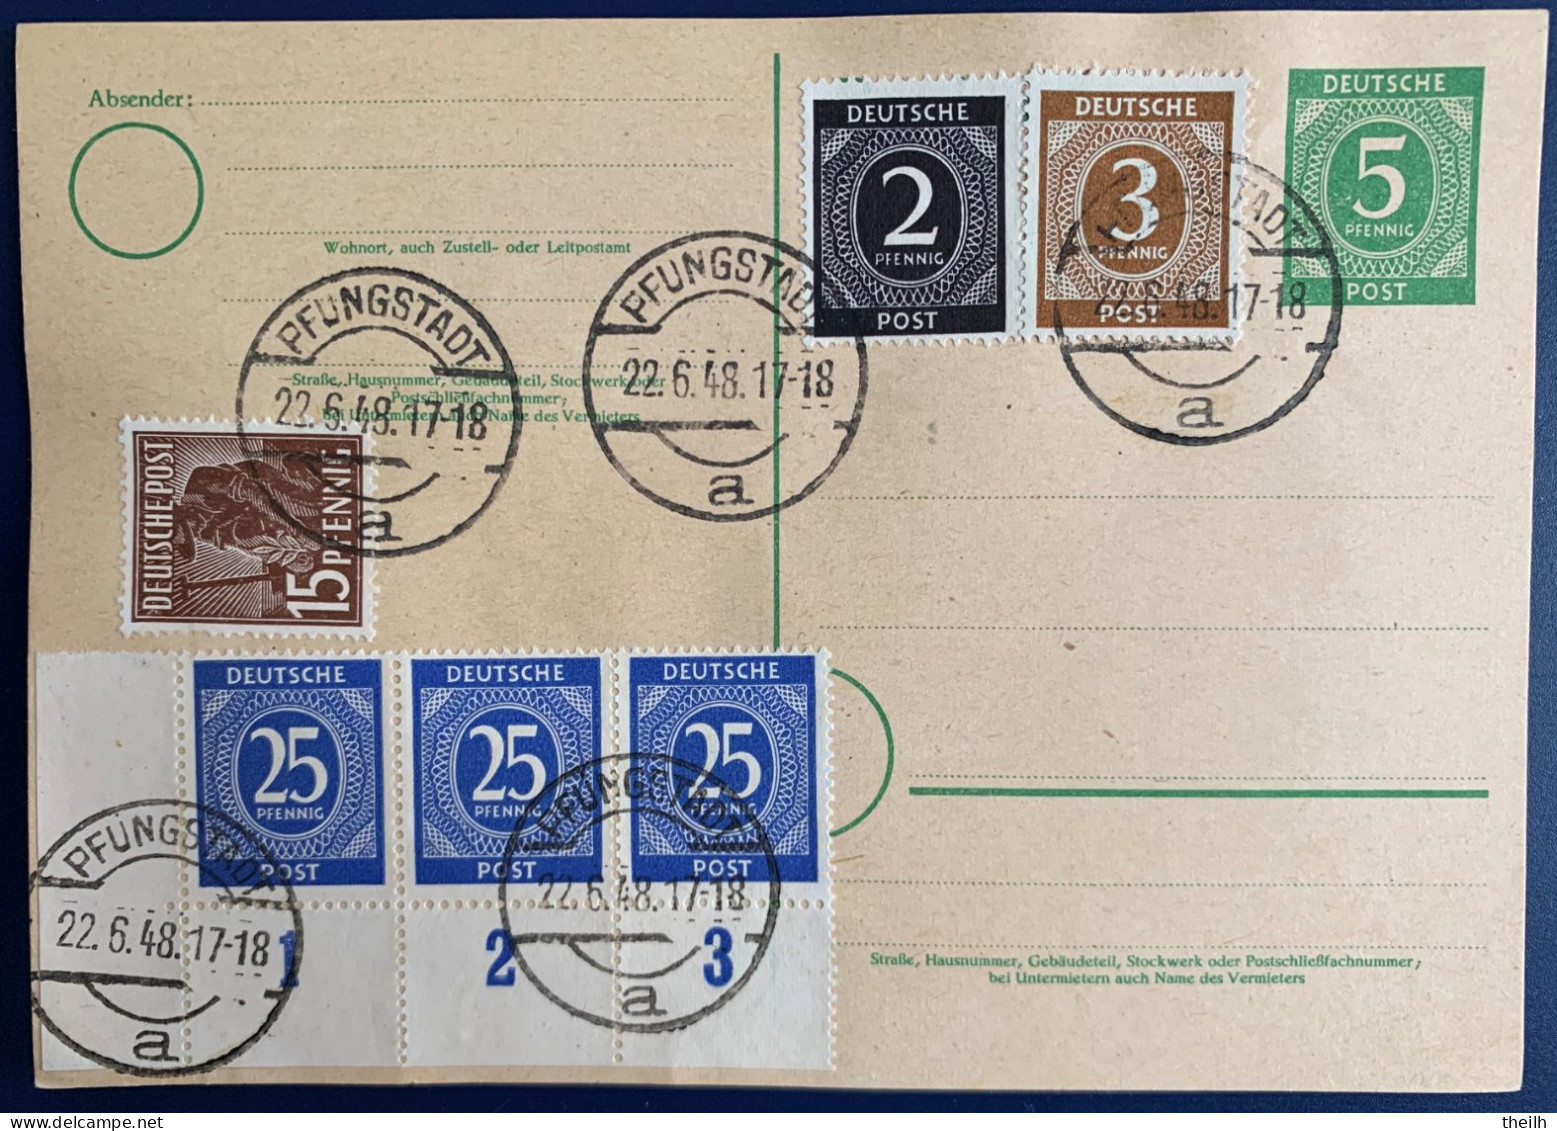 Ganzsache Postkarte Mit Zusatzfrankatur, Alliierte Besetzung, Gemeinschaftsausgaben, 1948 - Ganzsachen